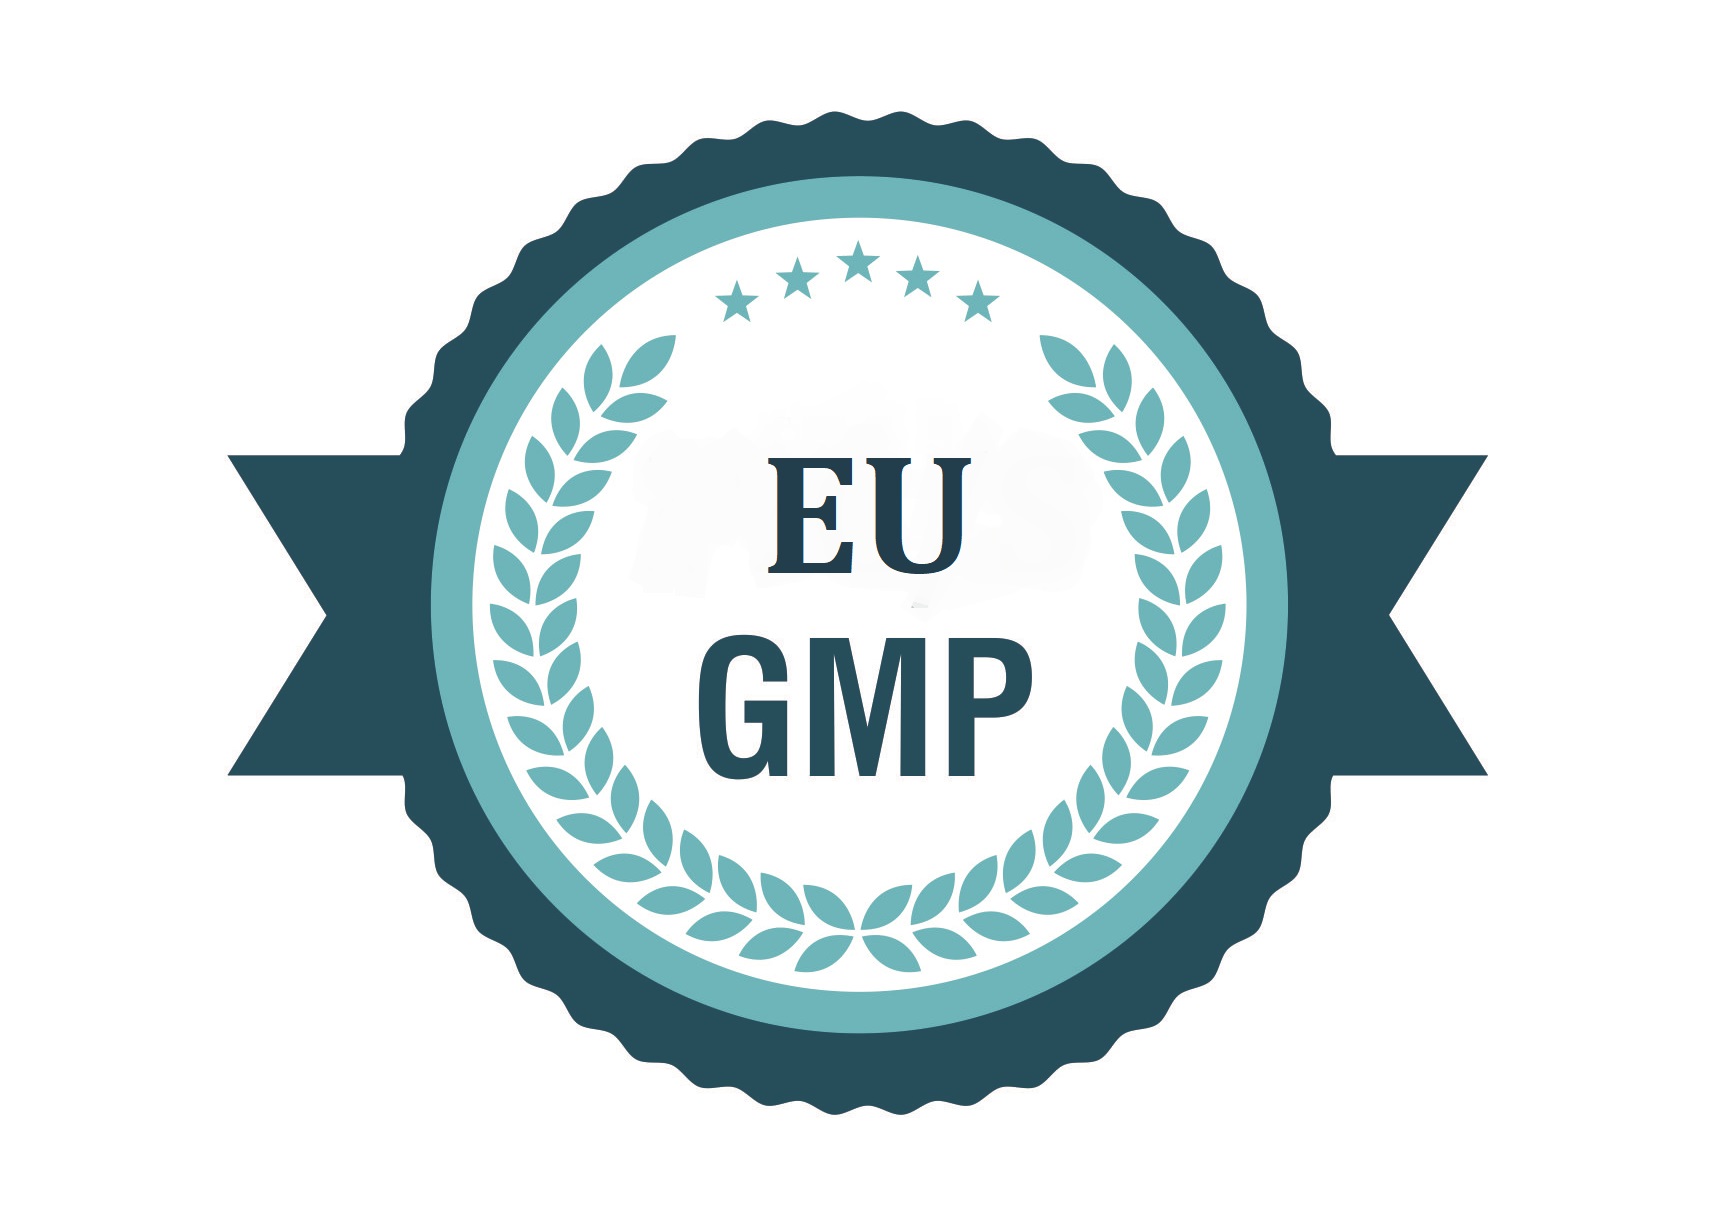 EU GMP annex 17: Kiểm tra thực tế và công bố thông số